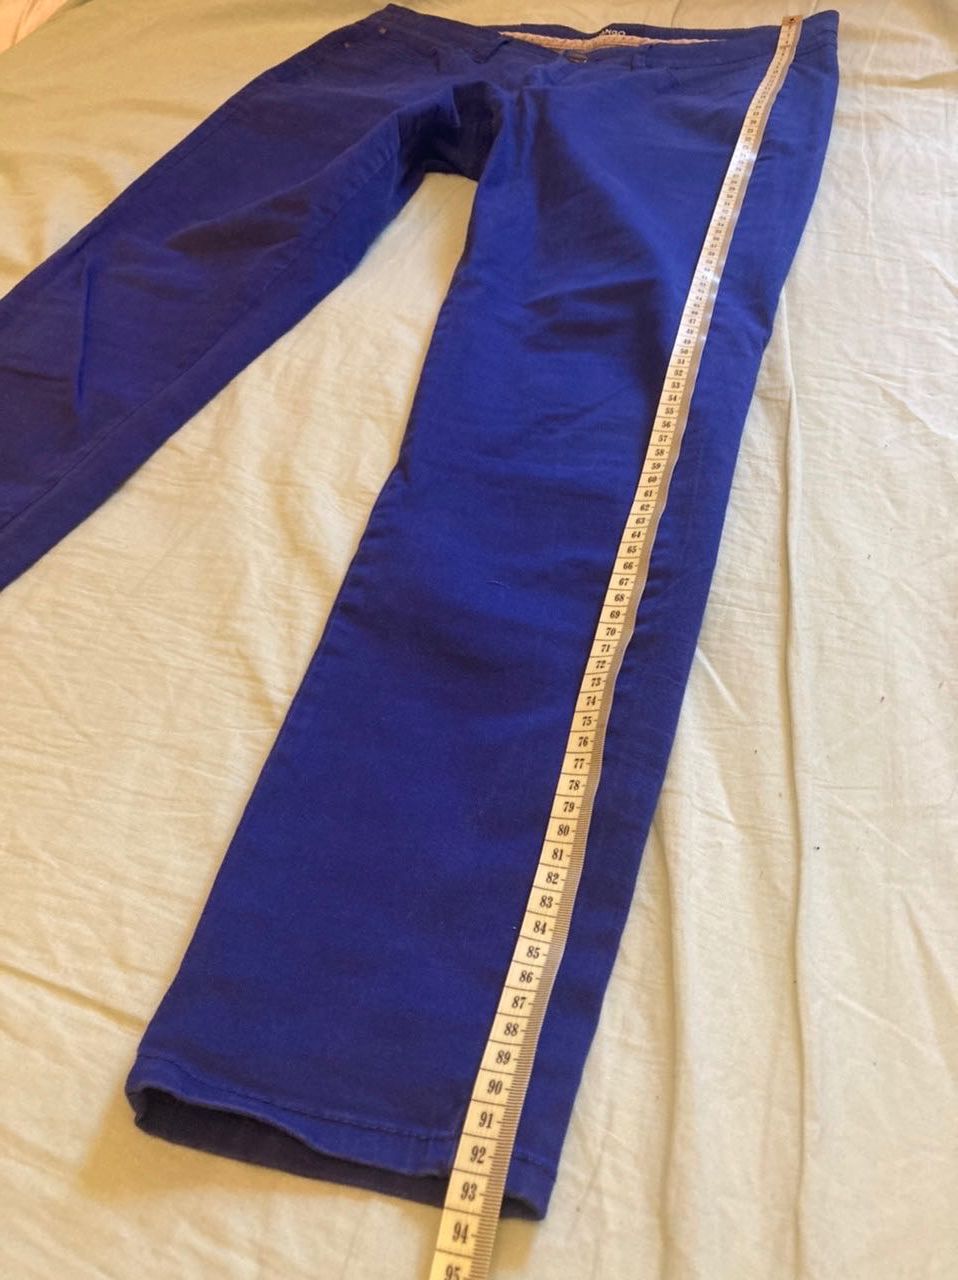 Bawełniane granatowe spodnie Mango 38 M kobaltowe proste